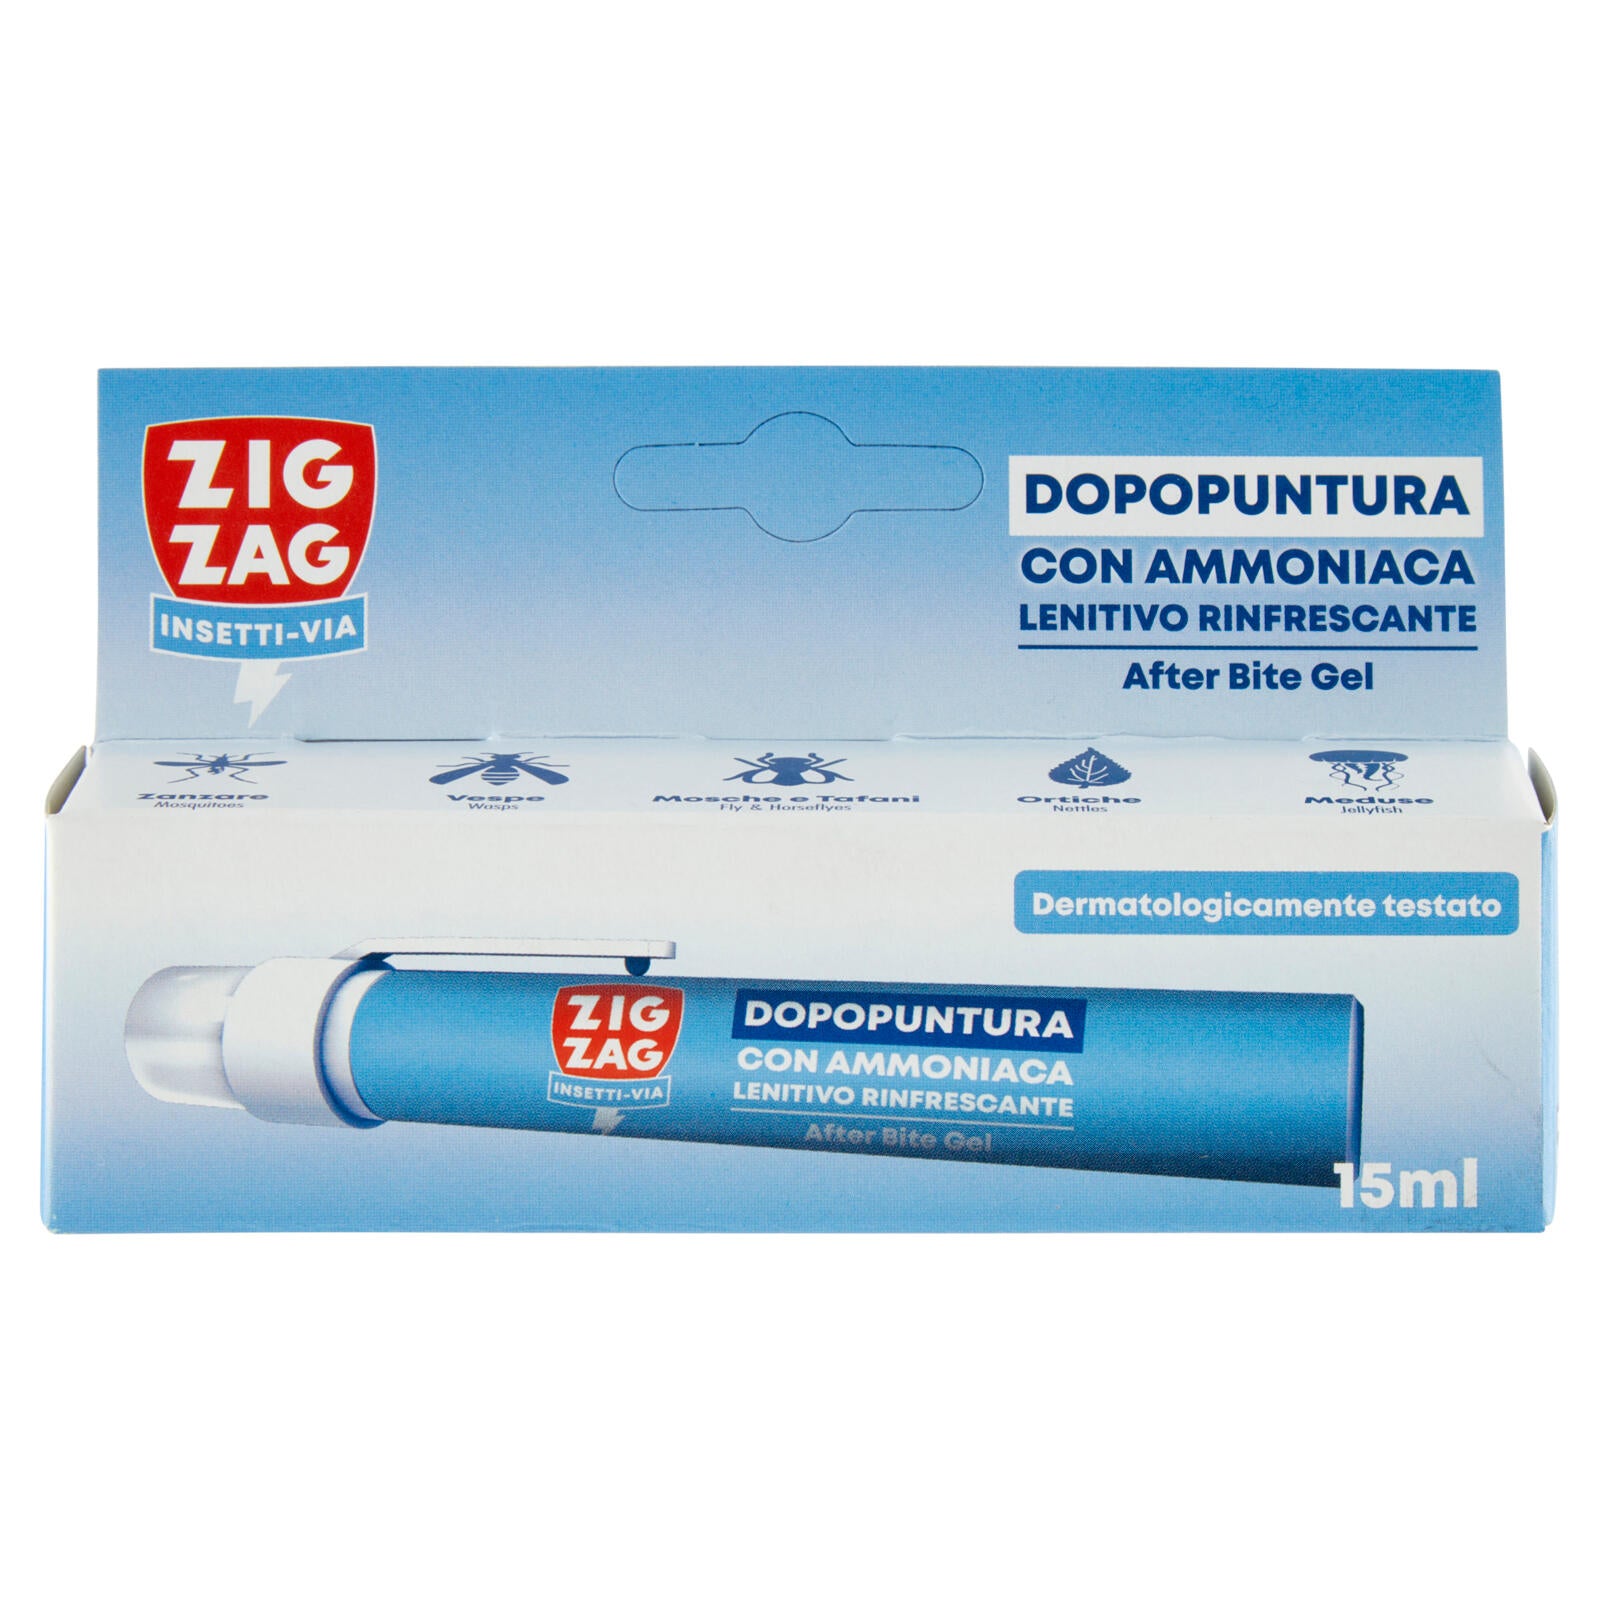 Zig Zag Insetti-Via Dopopuntura con Ammoniaca Lenitivo Rinfrescante 15 ml